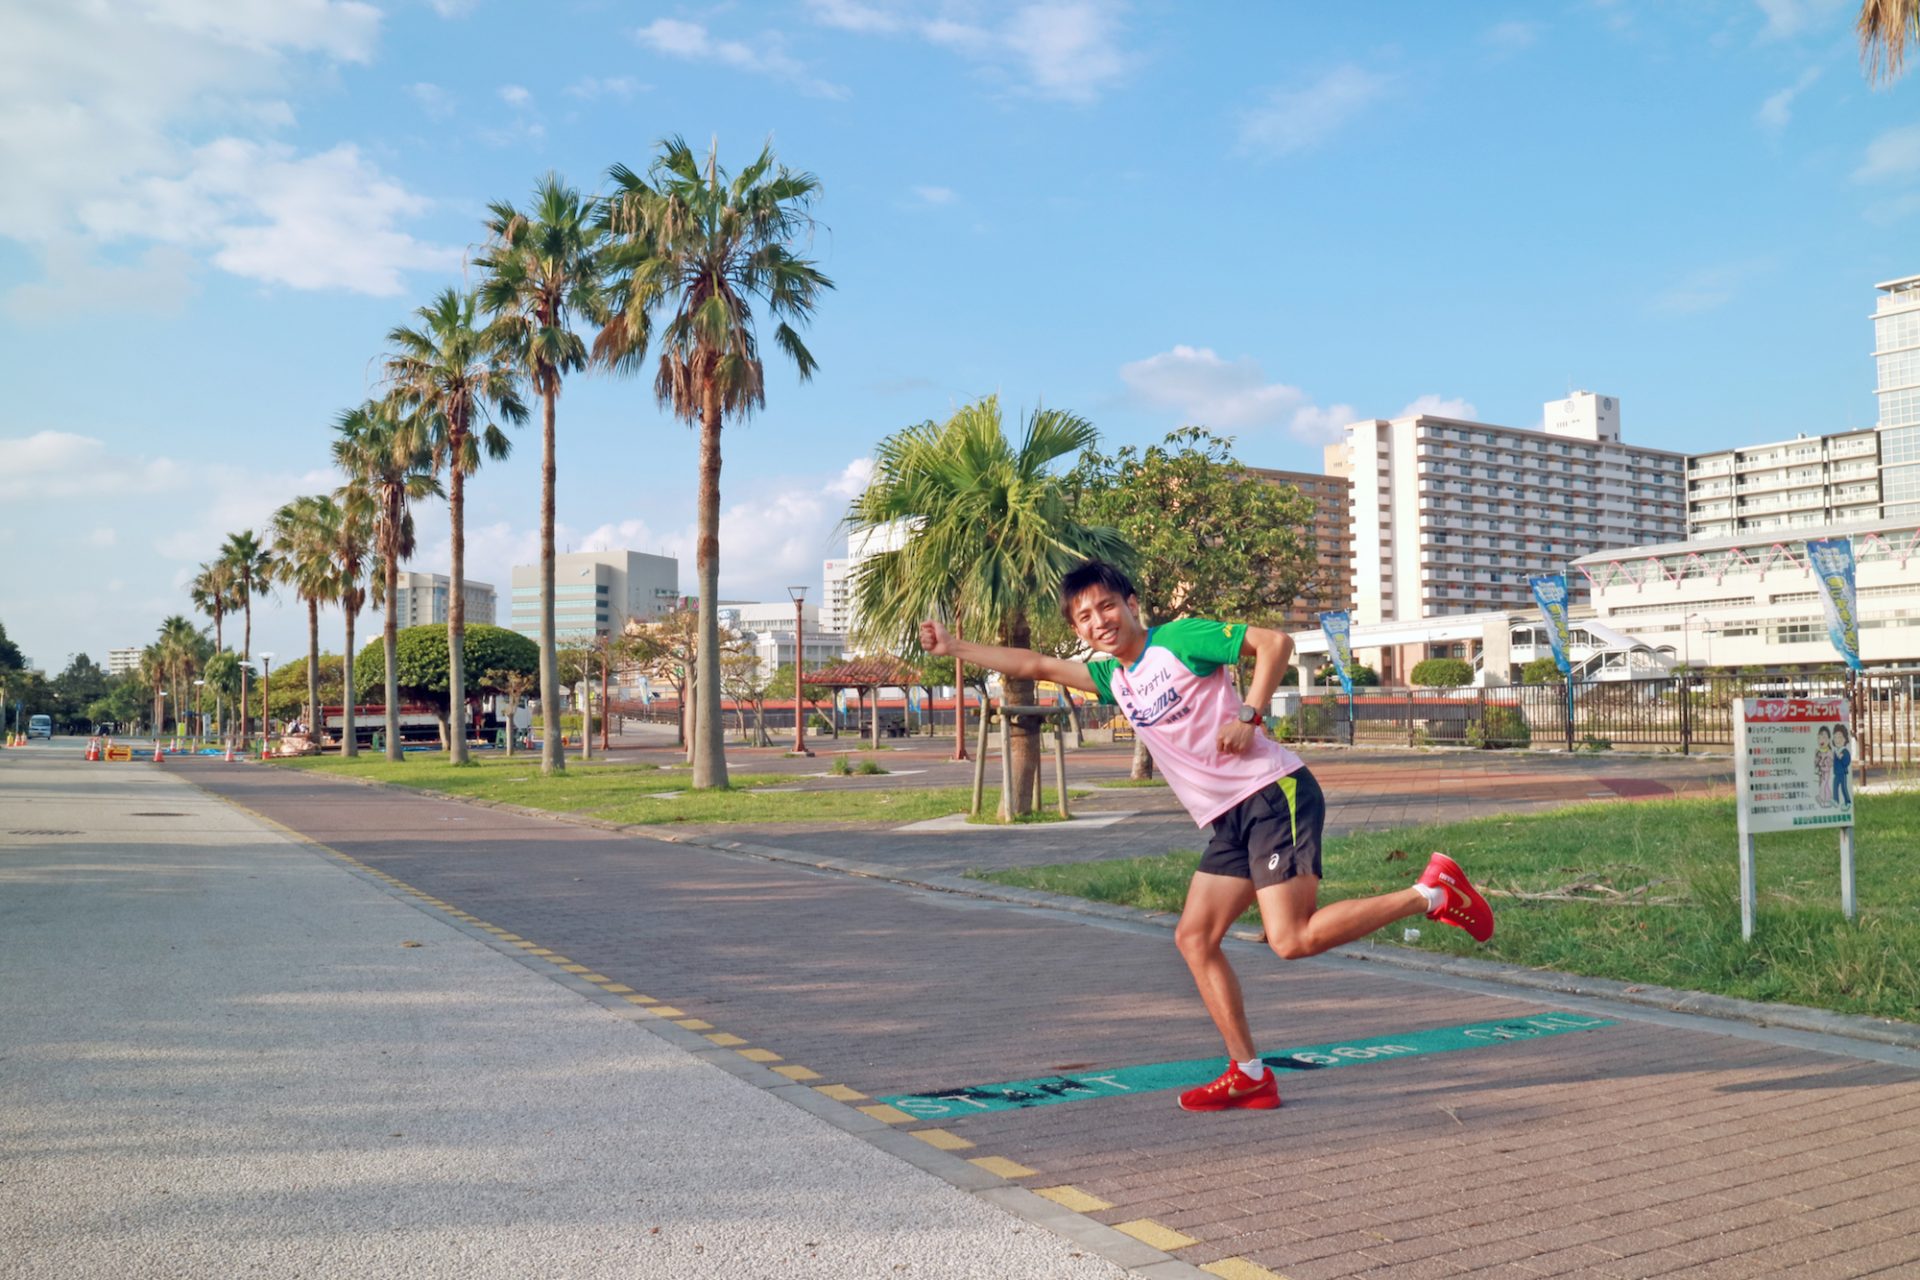 沖縄のマラソン芸人 なみちゃんが Nahaマラソン をナビゲート 楽しむポイントやおすすめ練習コースもご紹介 沖縄の観光情報はfeel Okinawa